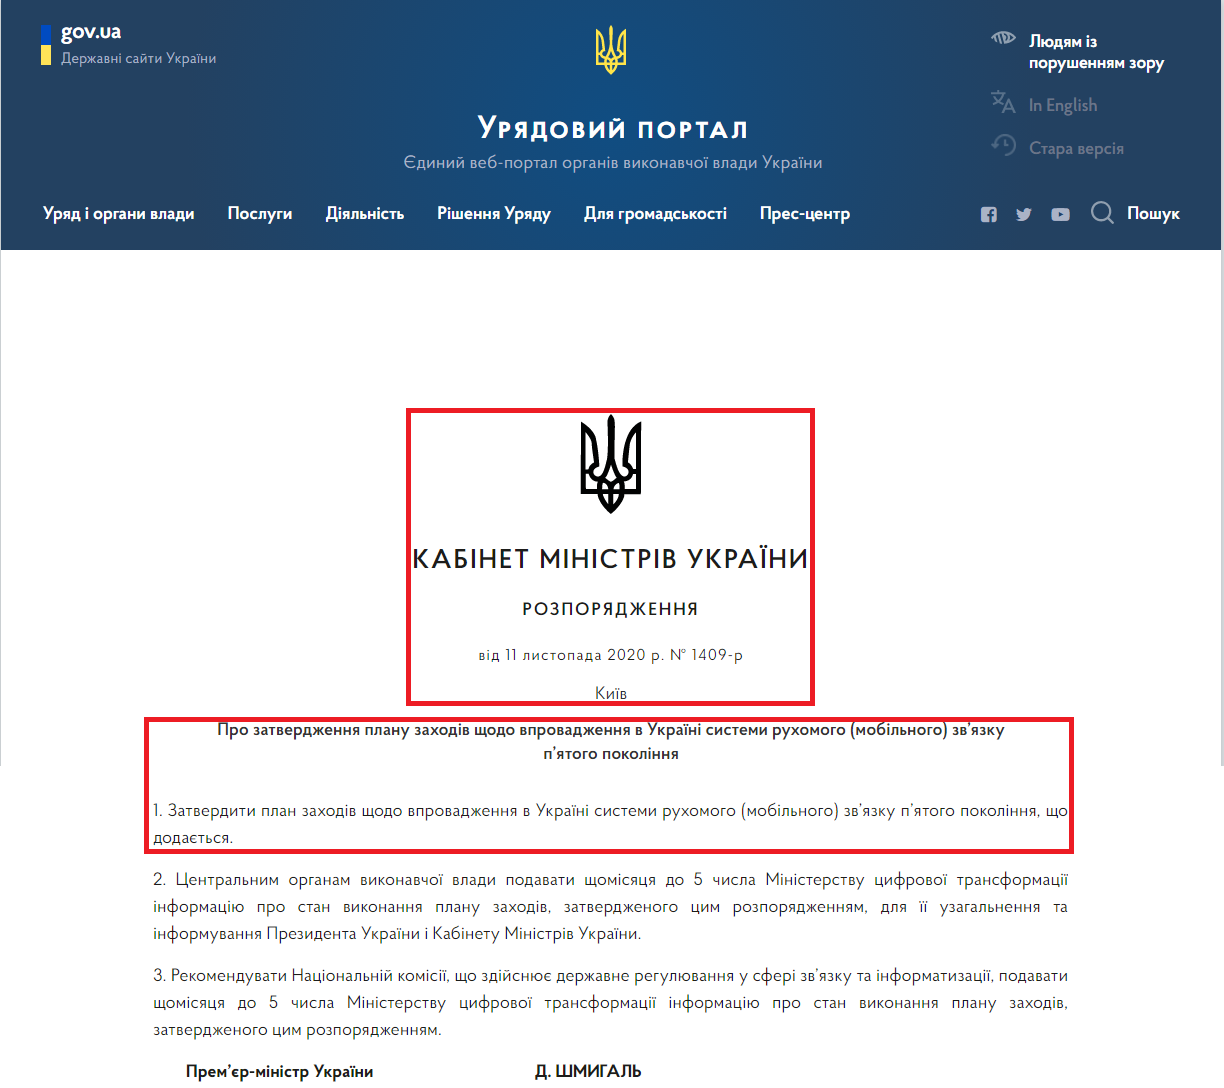 https://www.kmu.gov.ua/npas/pro-zatverdzhennya-planu-zahodiv-shchodo-vprovadzhennya-v-ukrayini-sistemi-ruhomogo-mobilnogo-zvyazku-pyatogo-pokolinnya-1409111120